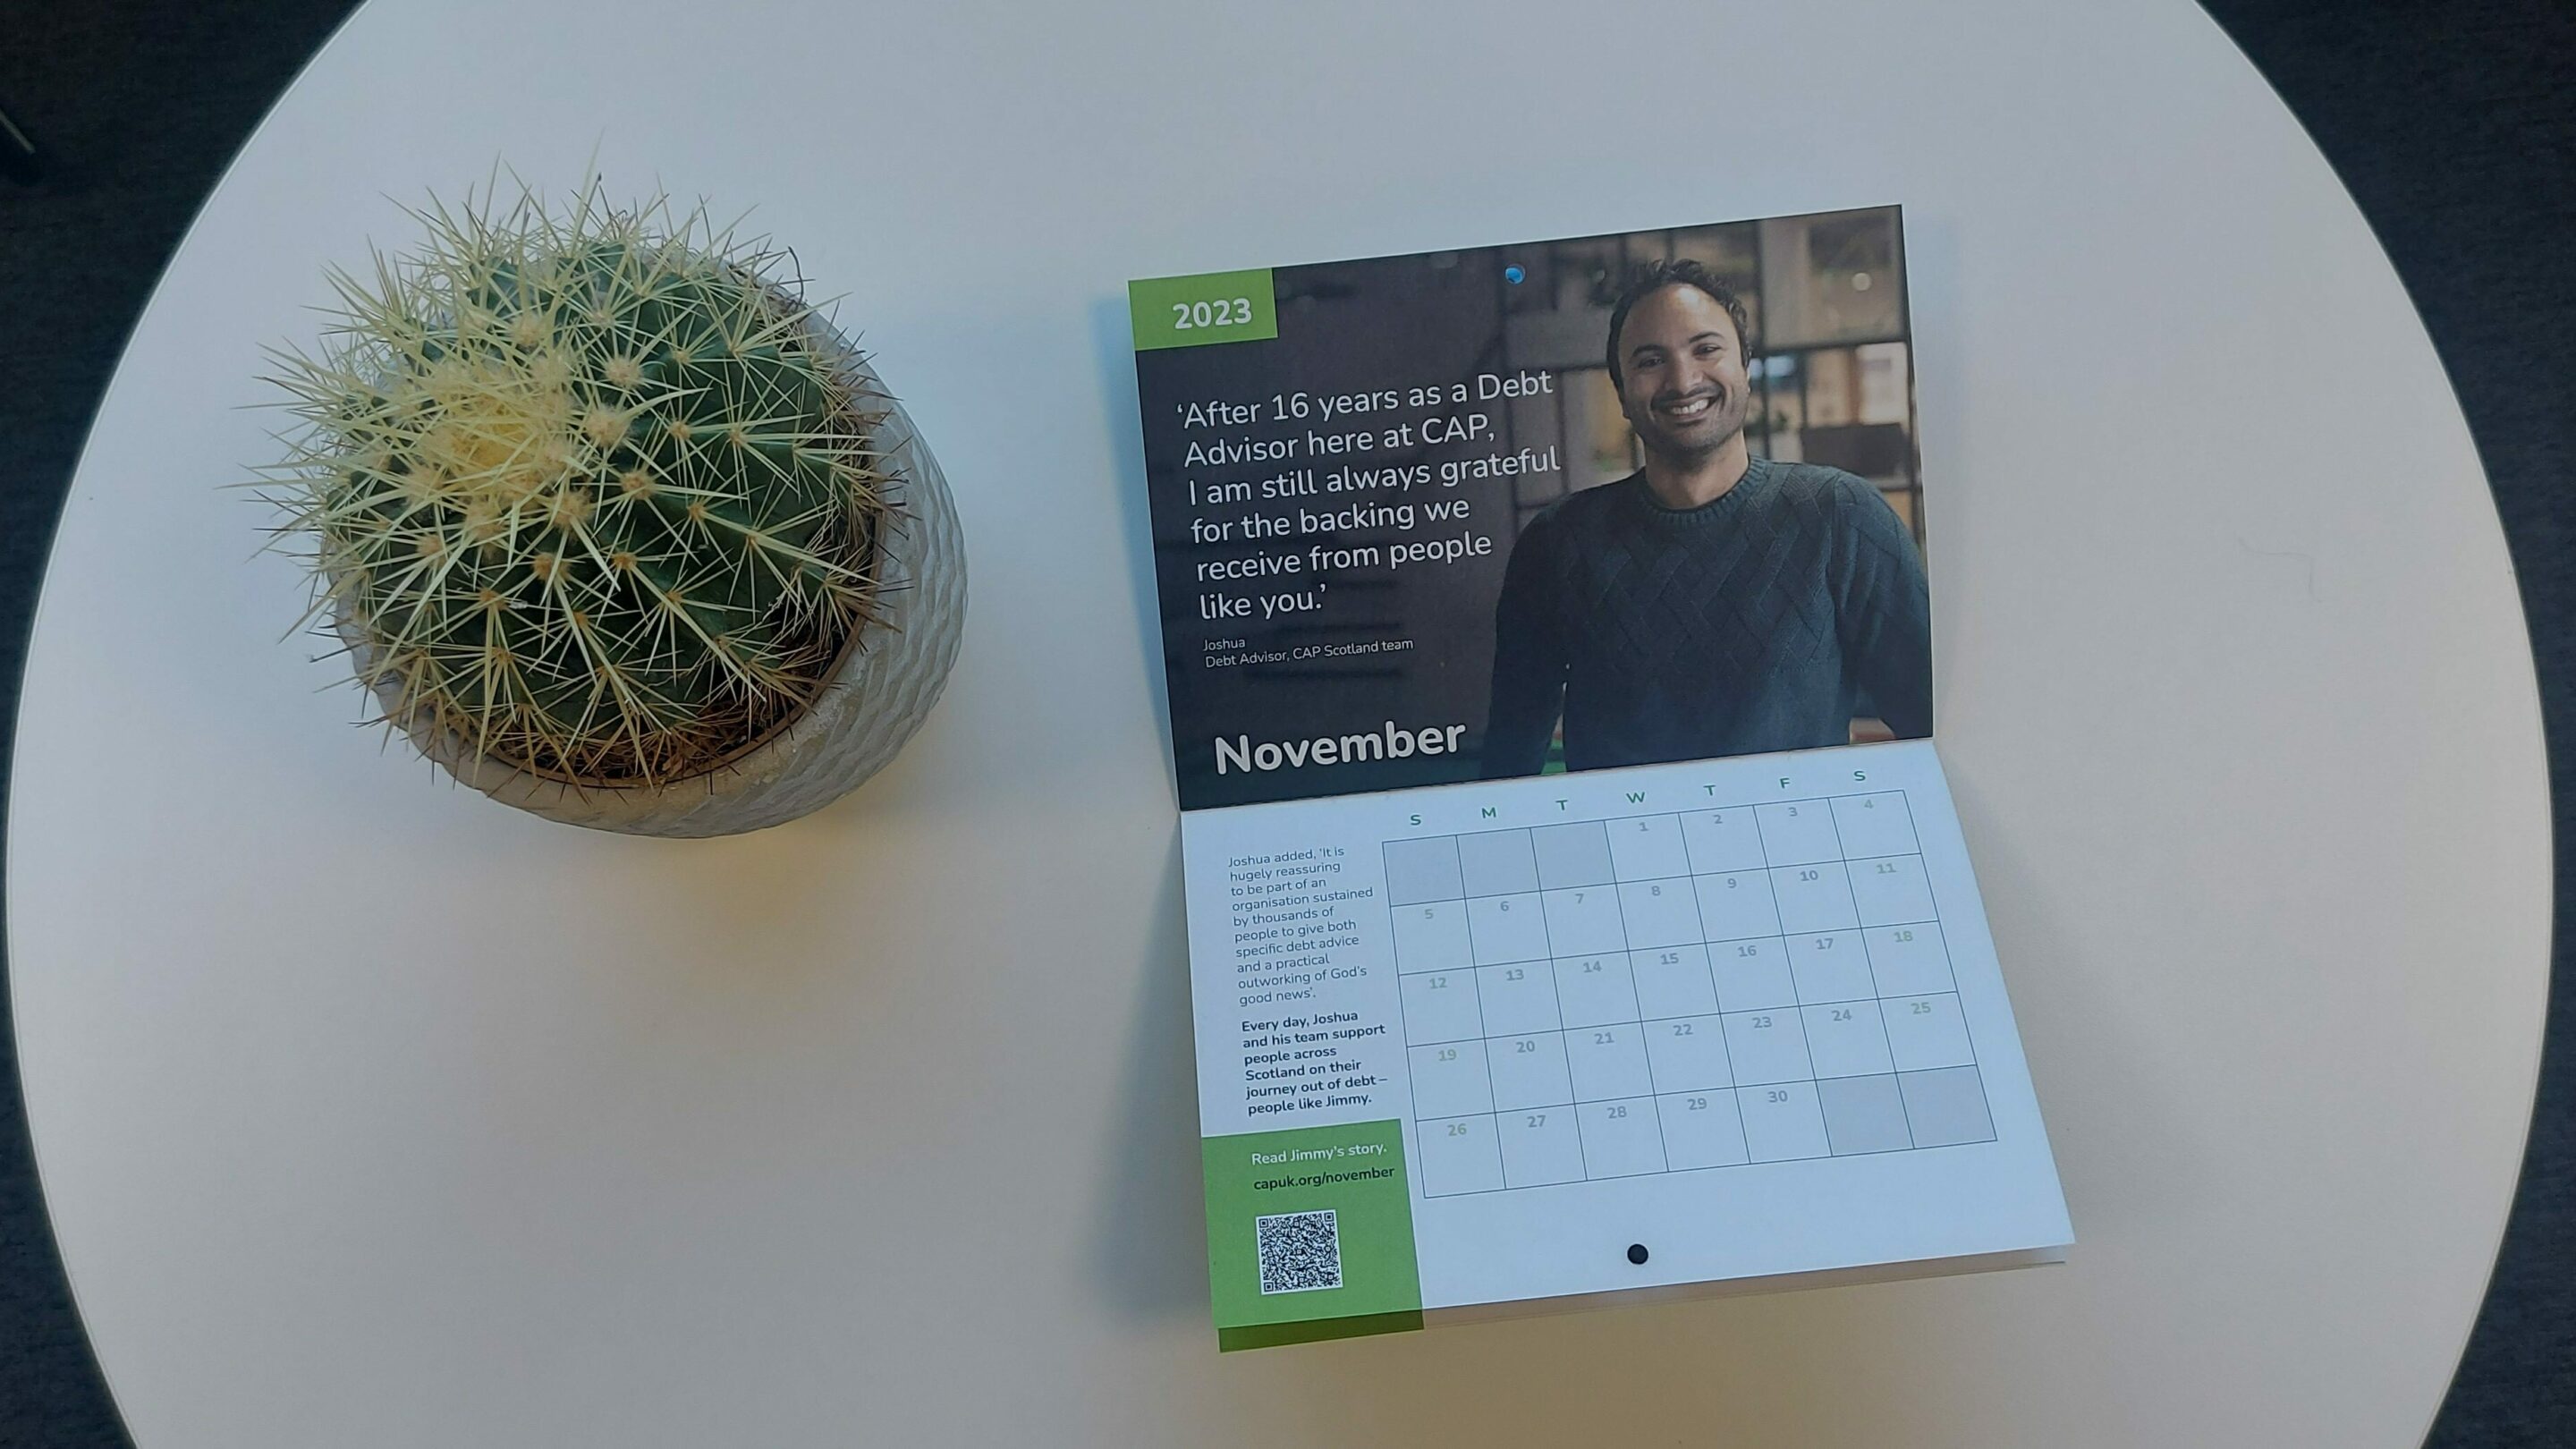 A cactus on a table next to an open calendar